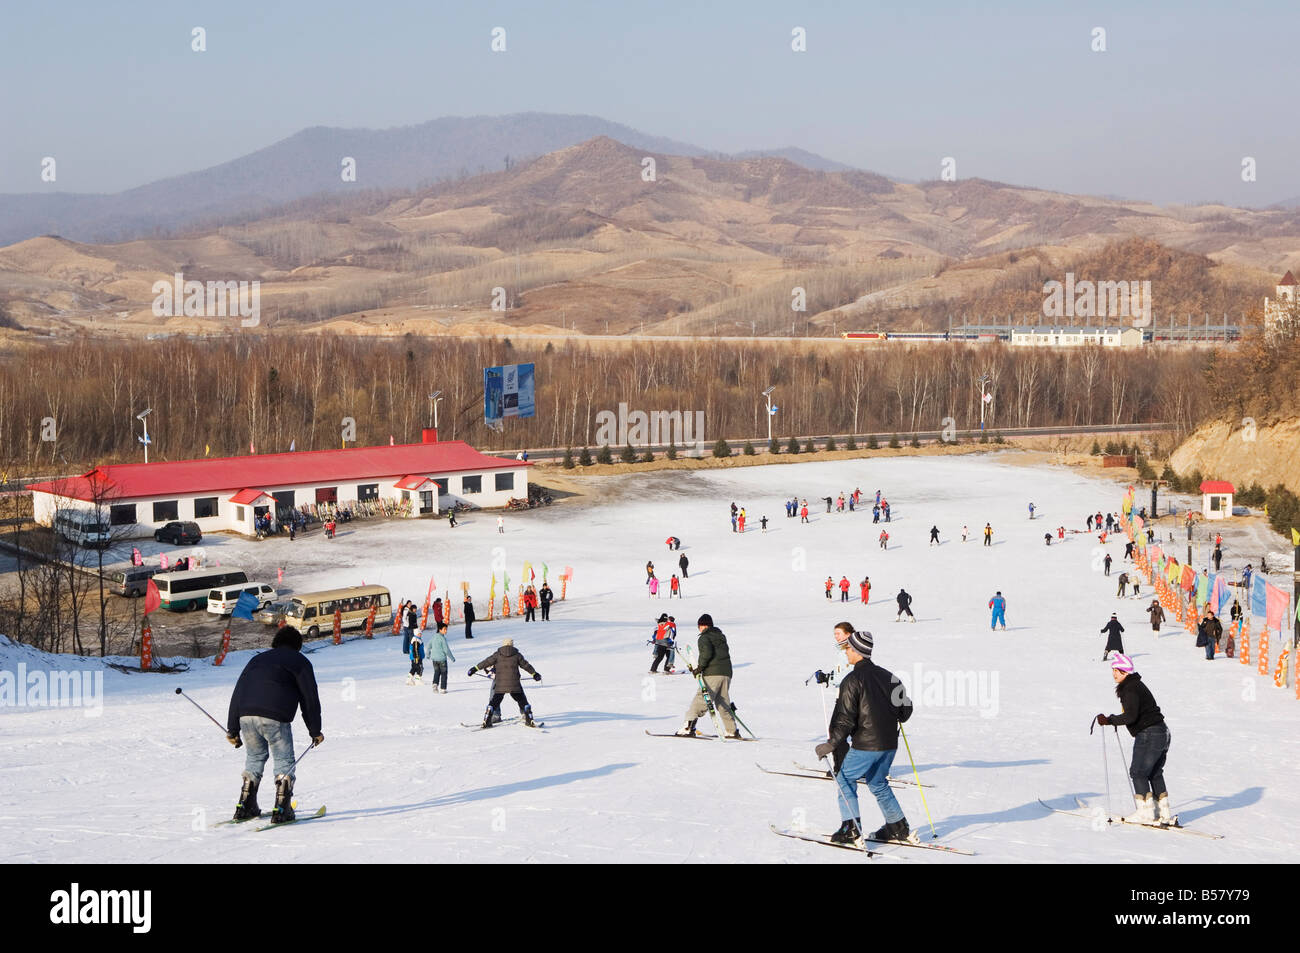 Yabuli ski resort, Provincia di Heilongjiang, a nord-est della Cina, la Cina, Asia Foto Stock